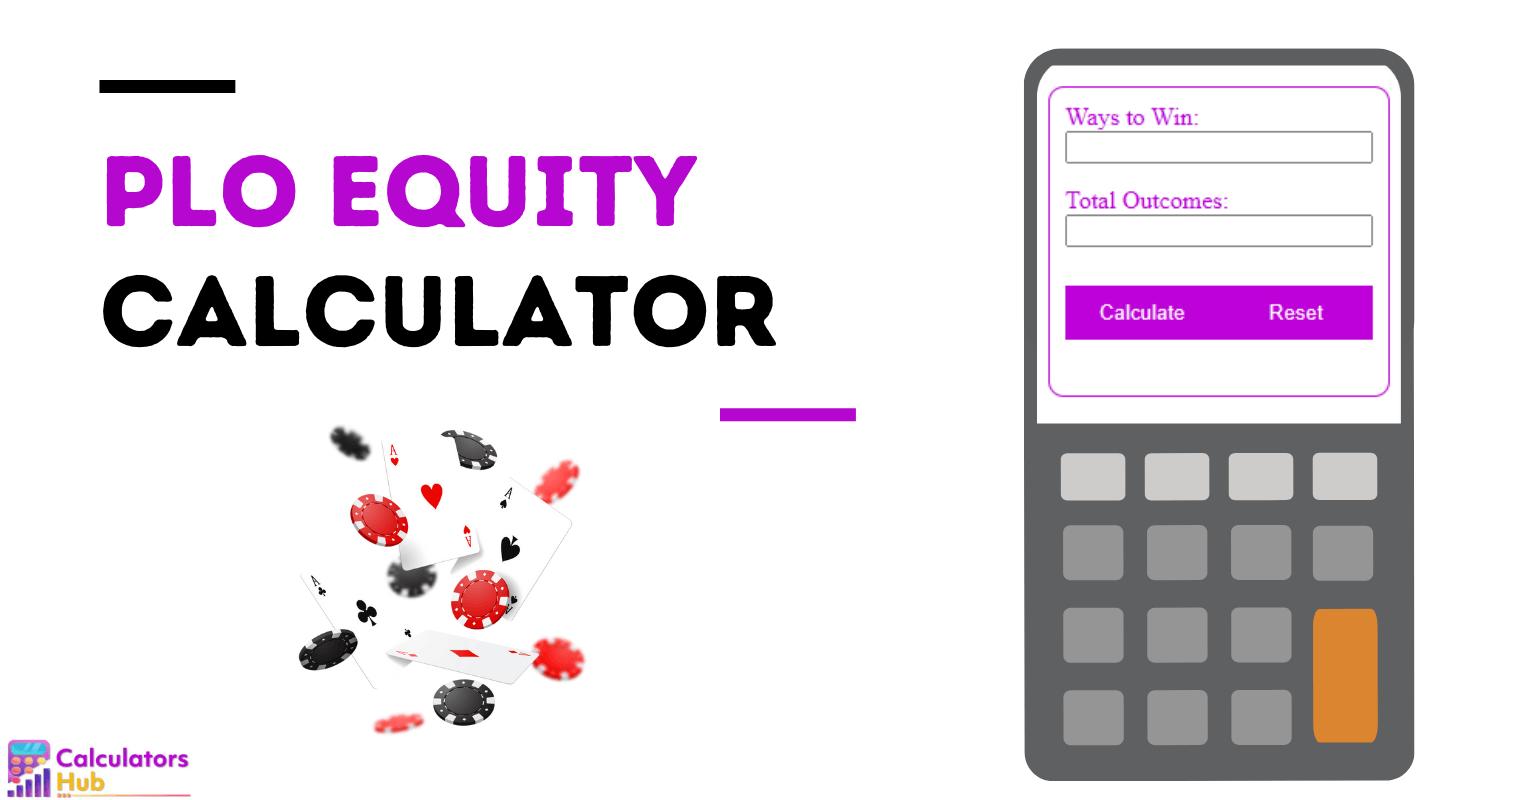 PLO Equity Calculator